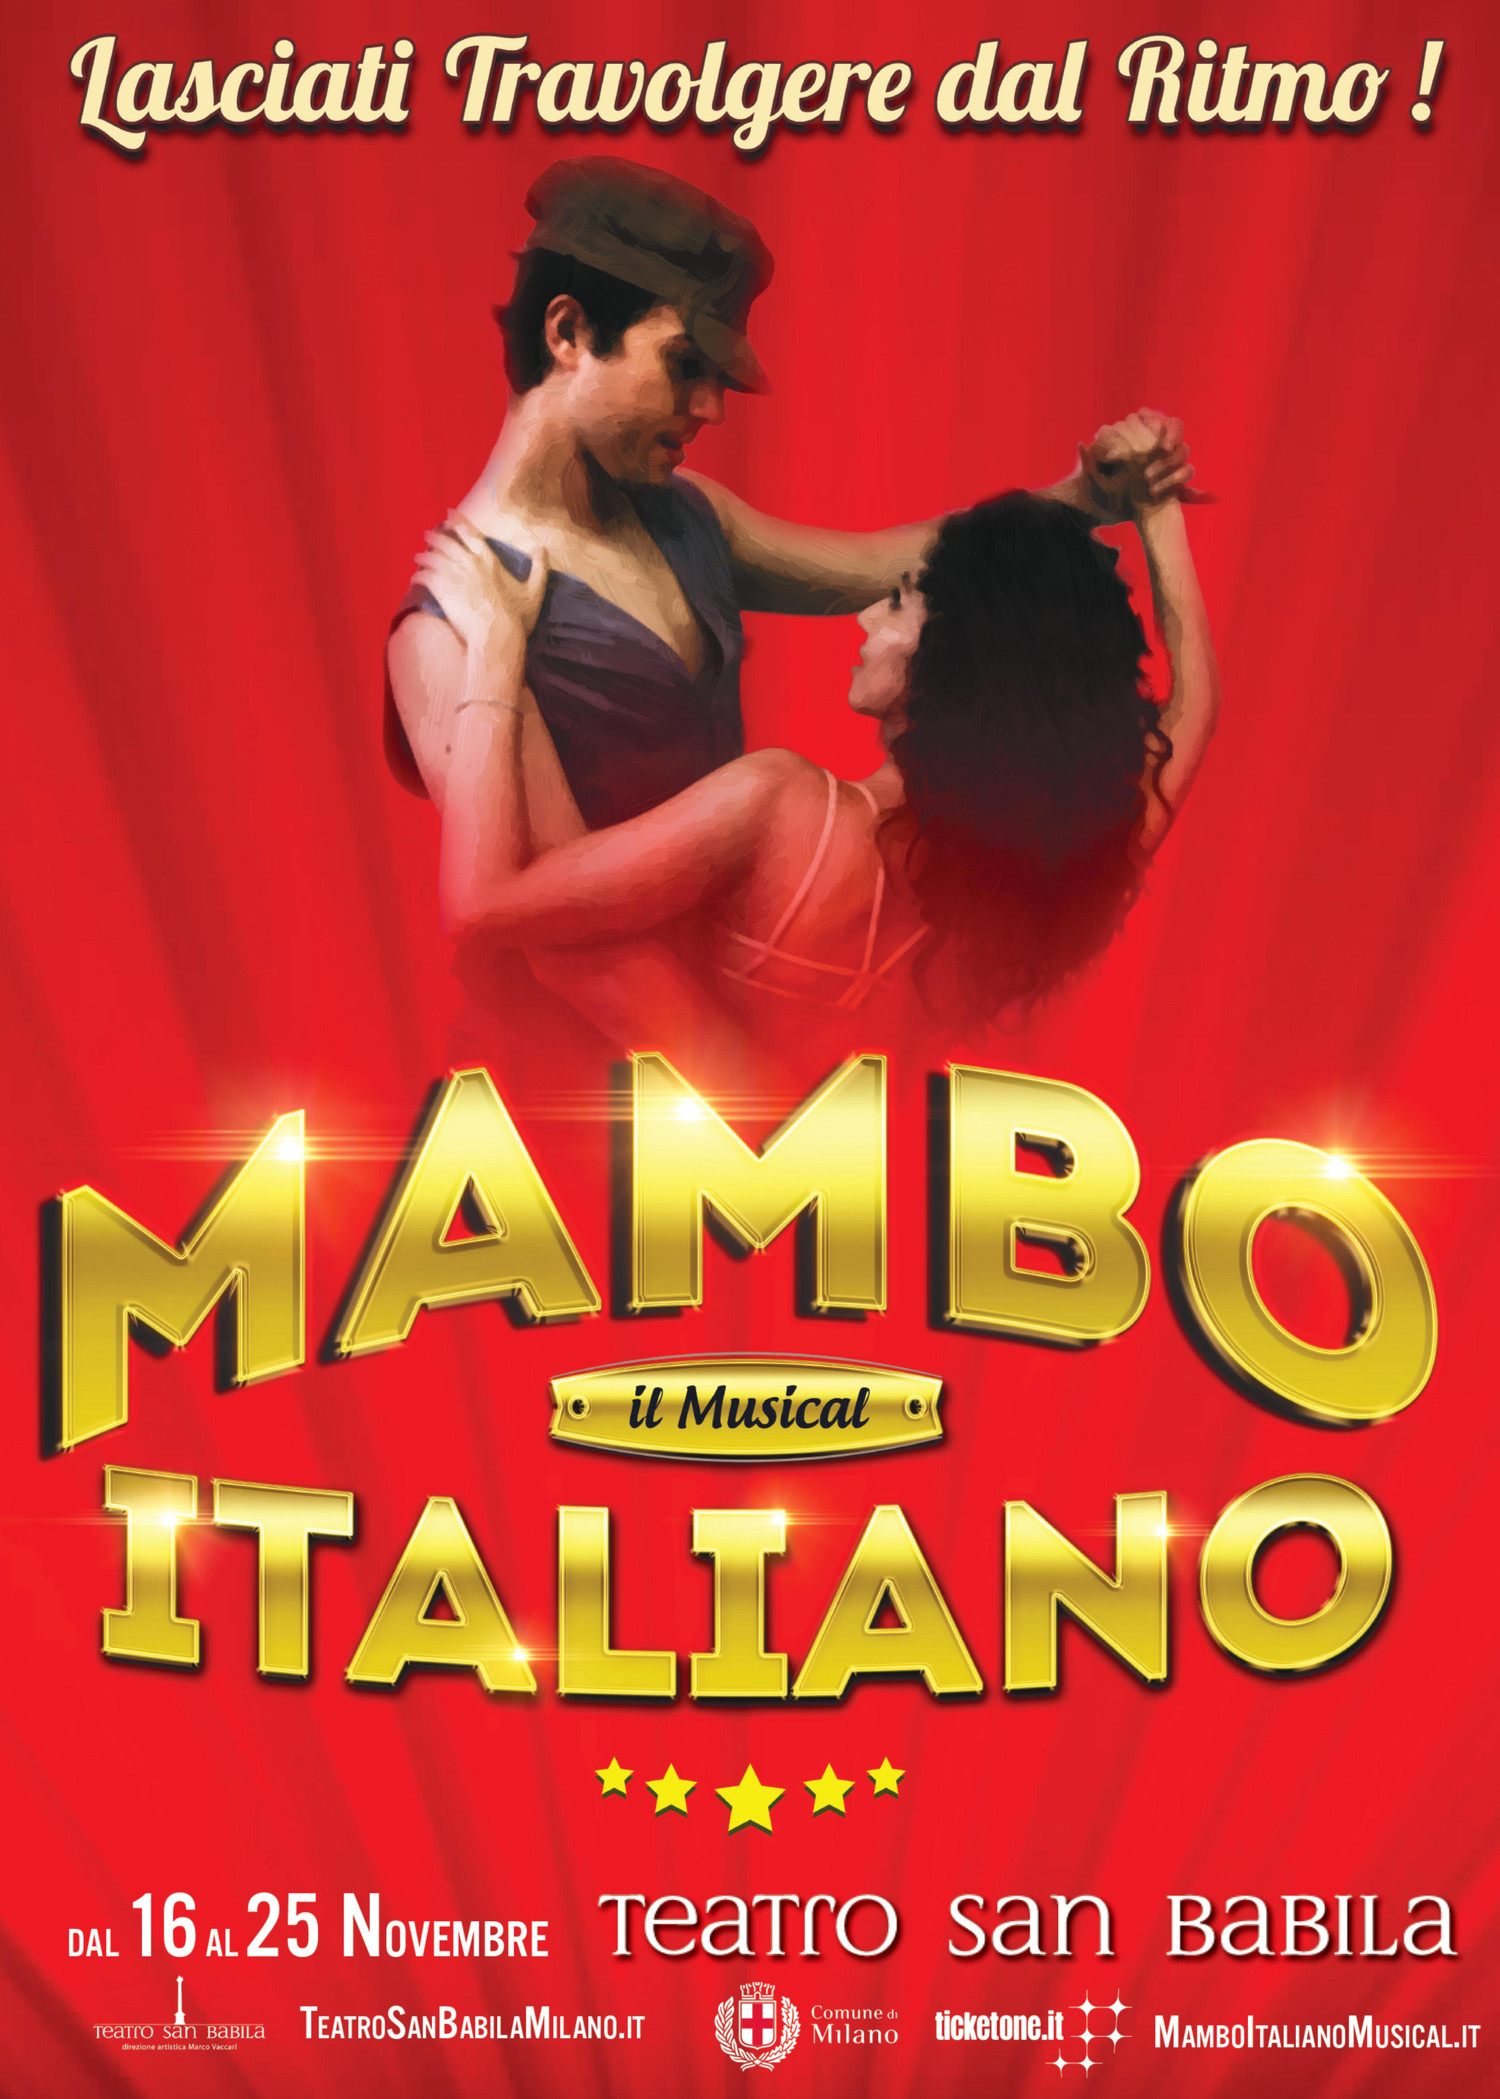 Debutta al Teatro San Babila di Milano MAMBO ITALIANO - IL MUSICAL, dal 16 al 25 novembre 